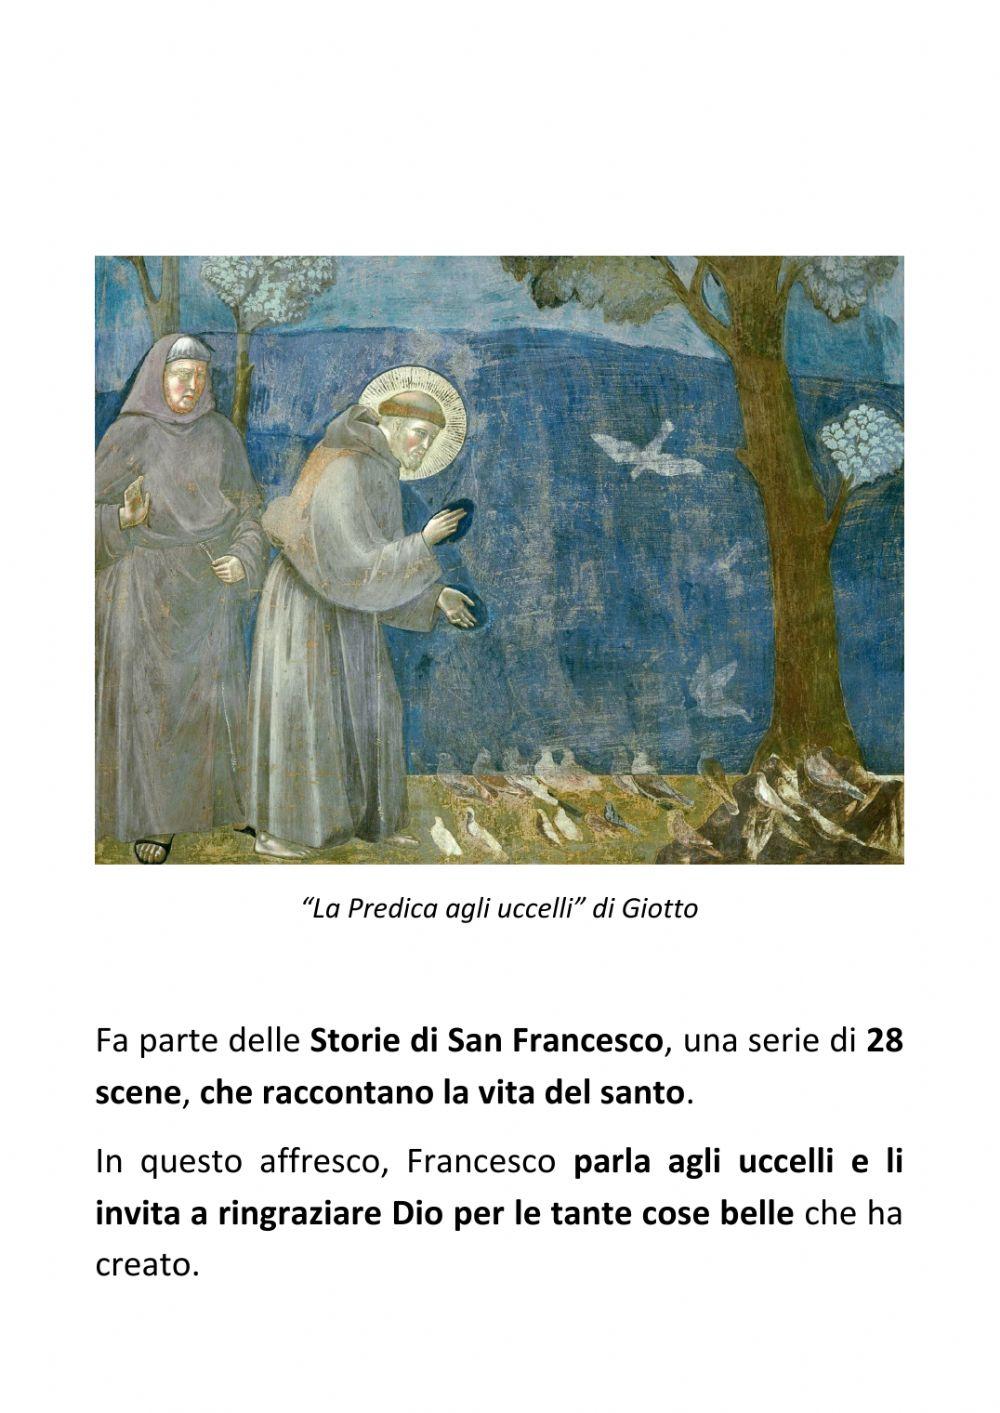 La Predica agli uccelli di Giotto